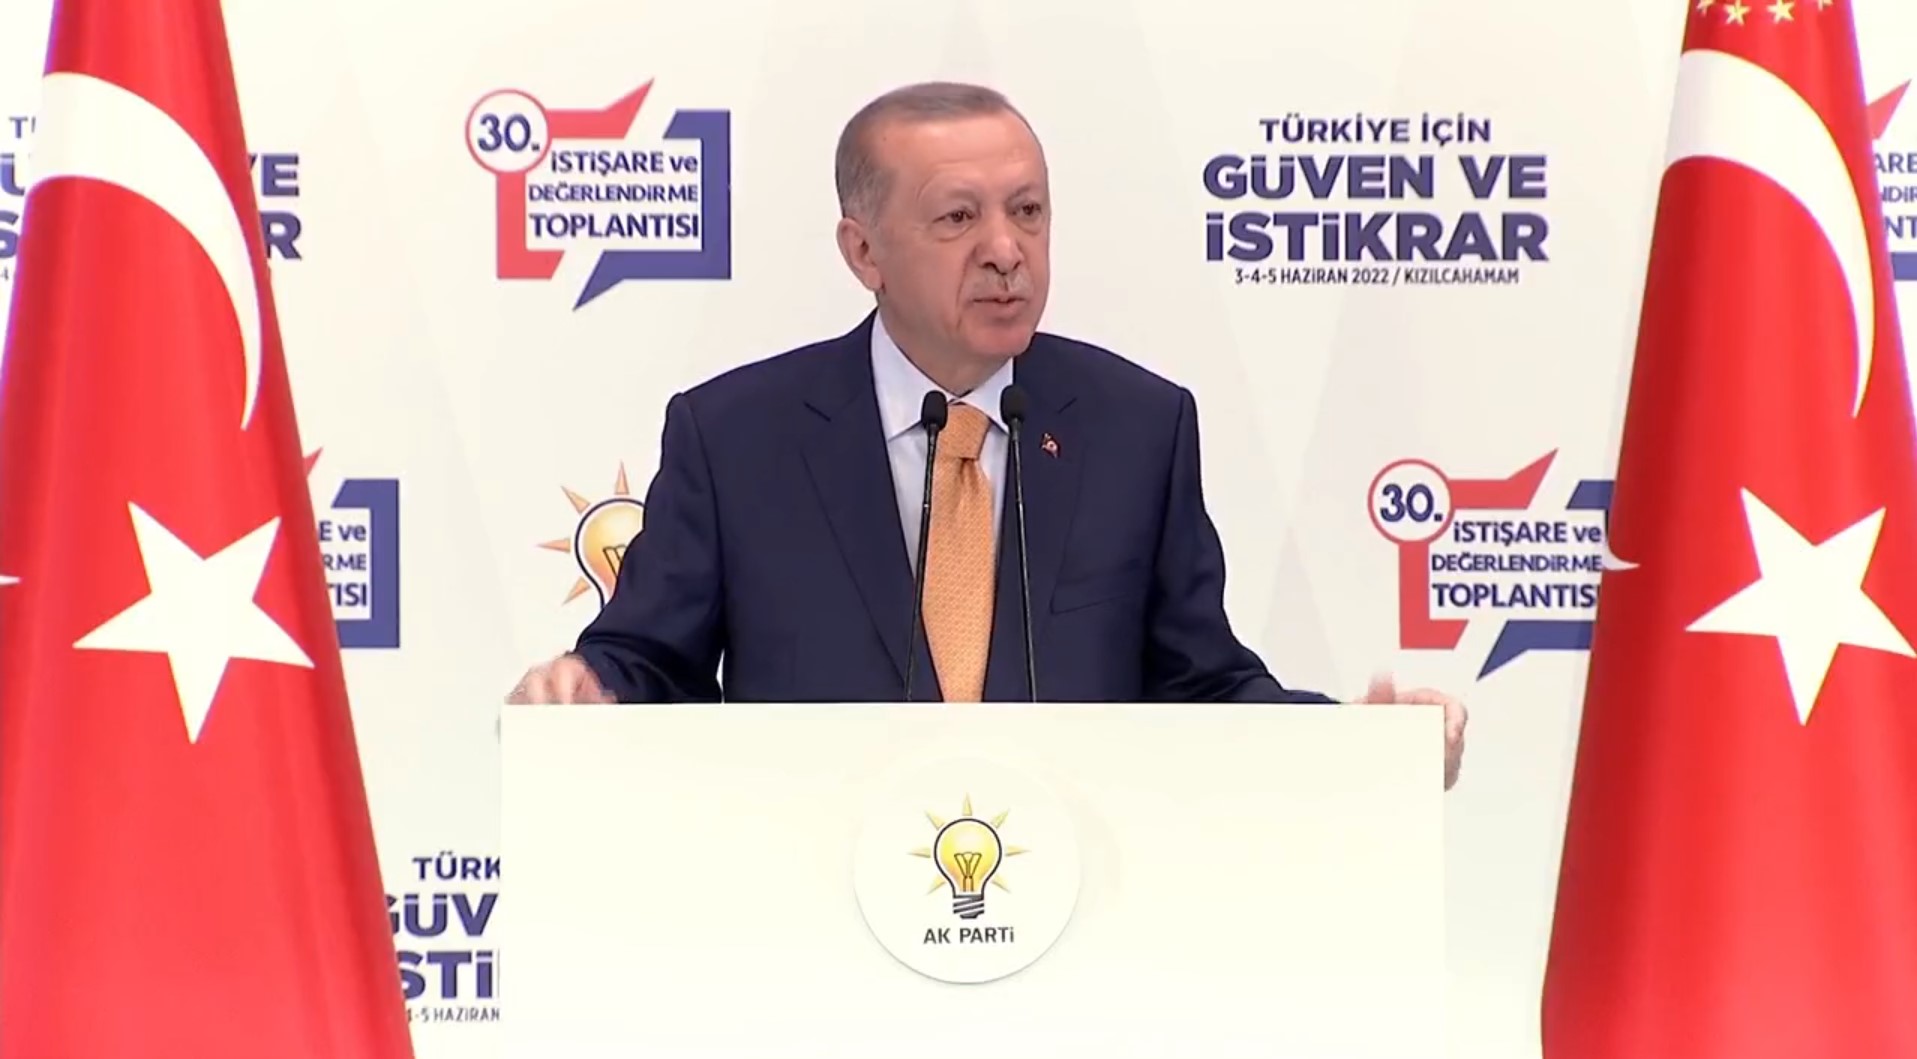 Cumhurbaşkanı Erdoğan, AK Parti'nin Kızılcahamam kampında konuştu! Seçim tarihi belli, sıkıyorsa aday mısın, değil misin onu açıkla